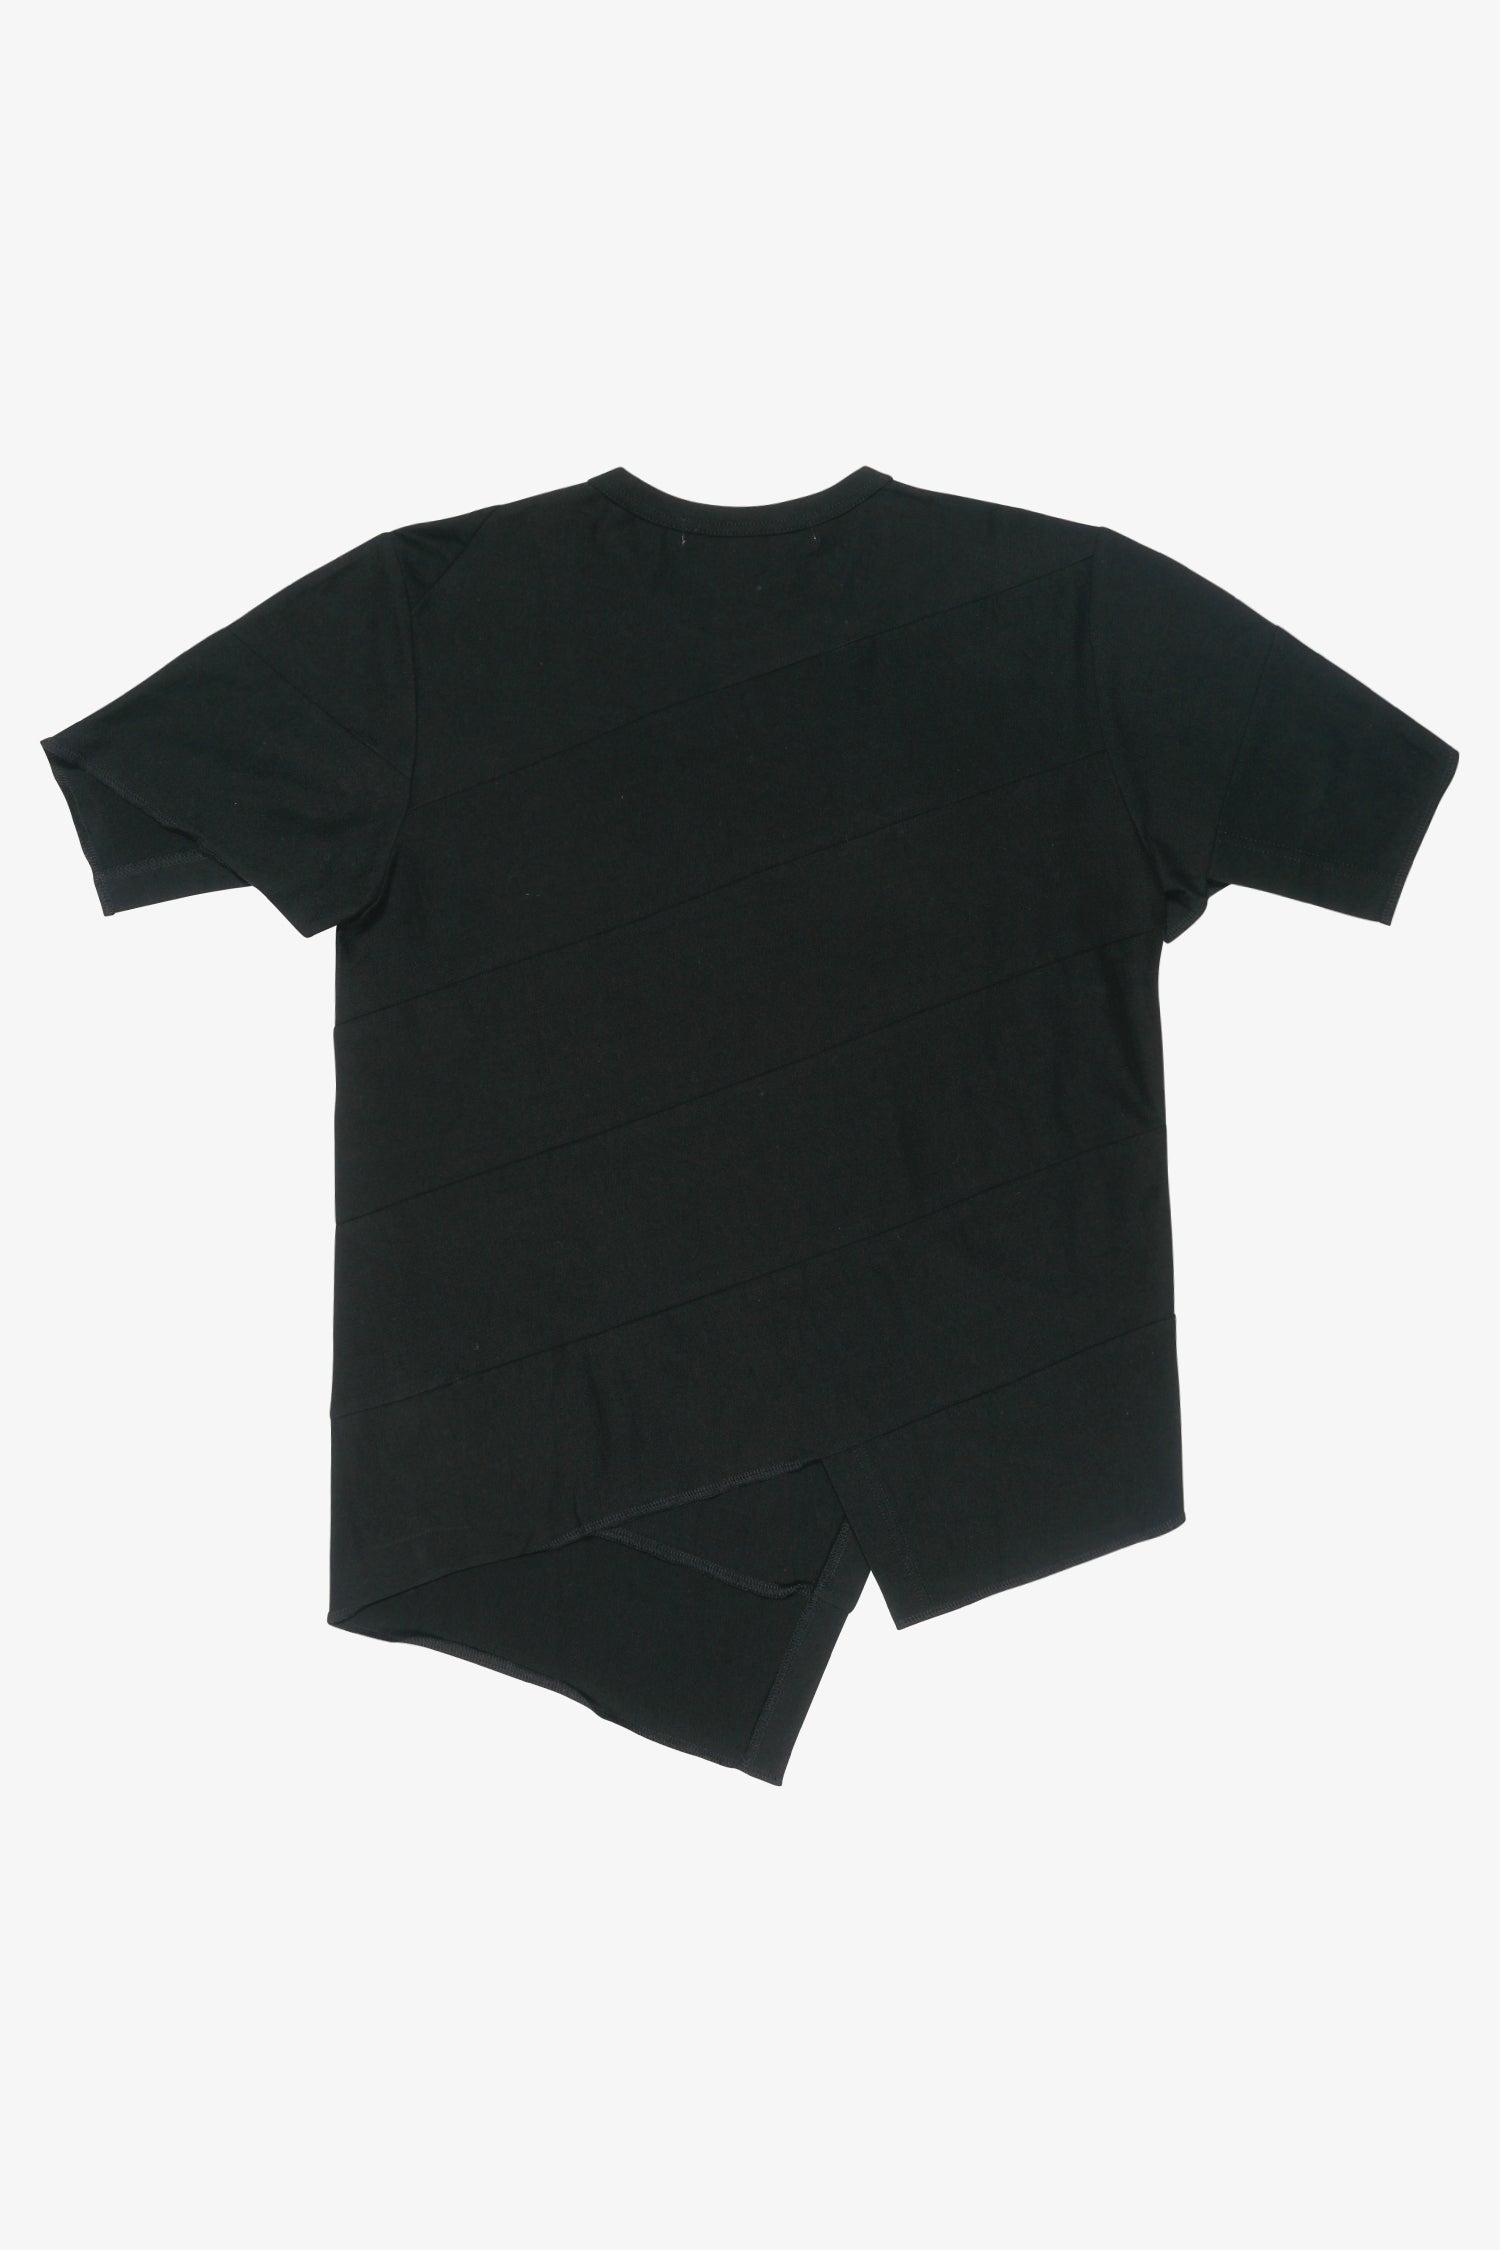 Selectshop FRAME - COMME DES GARÇONS COMME DES GARÇONS Deconstructed Asymmetric T-shirt T-Shirt Dubai